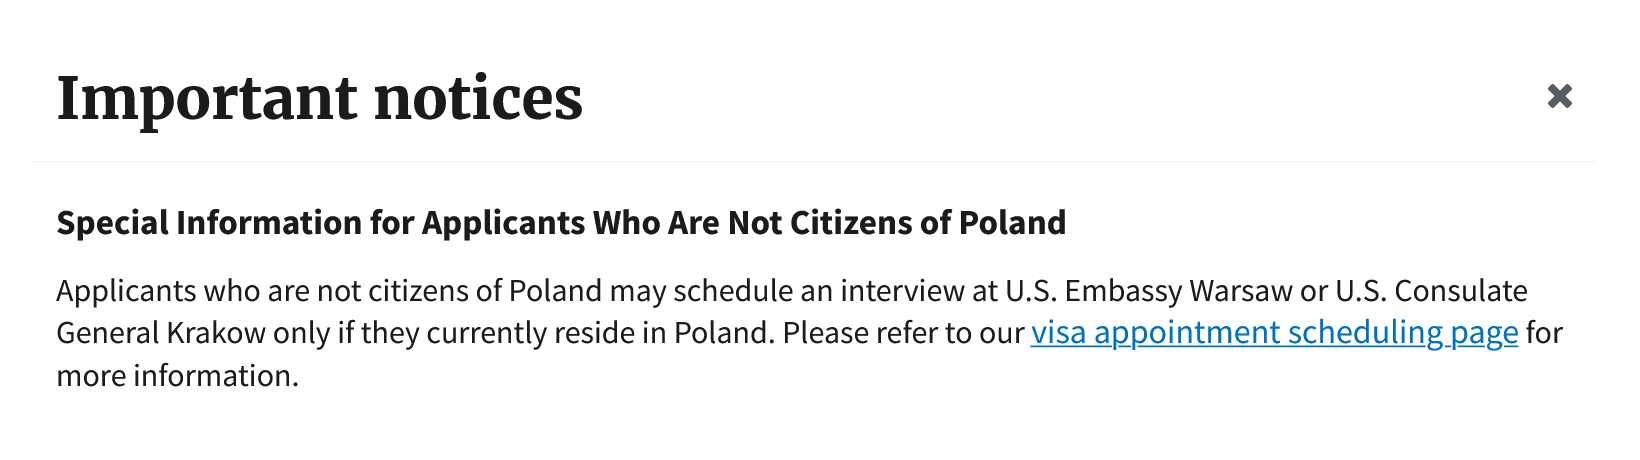 Информация для тех, кто подается на визу США в Польше, на сайте ustraveldocs.com